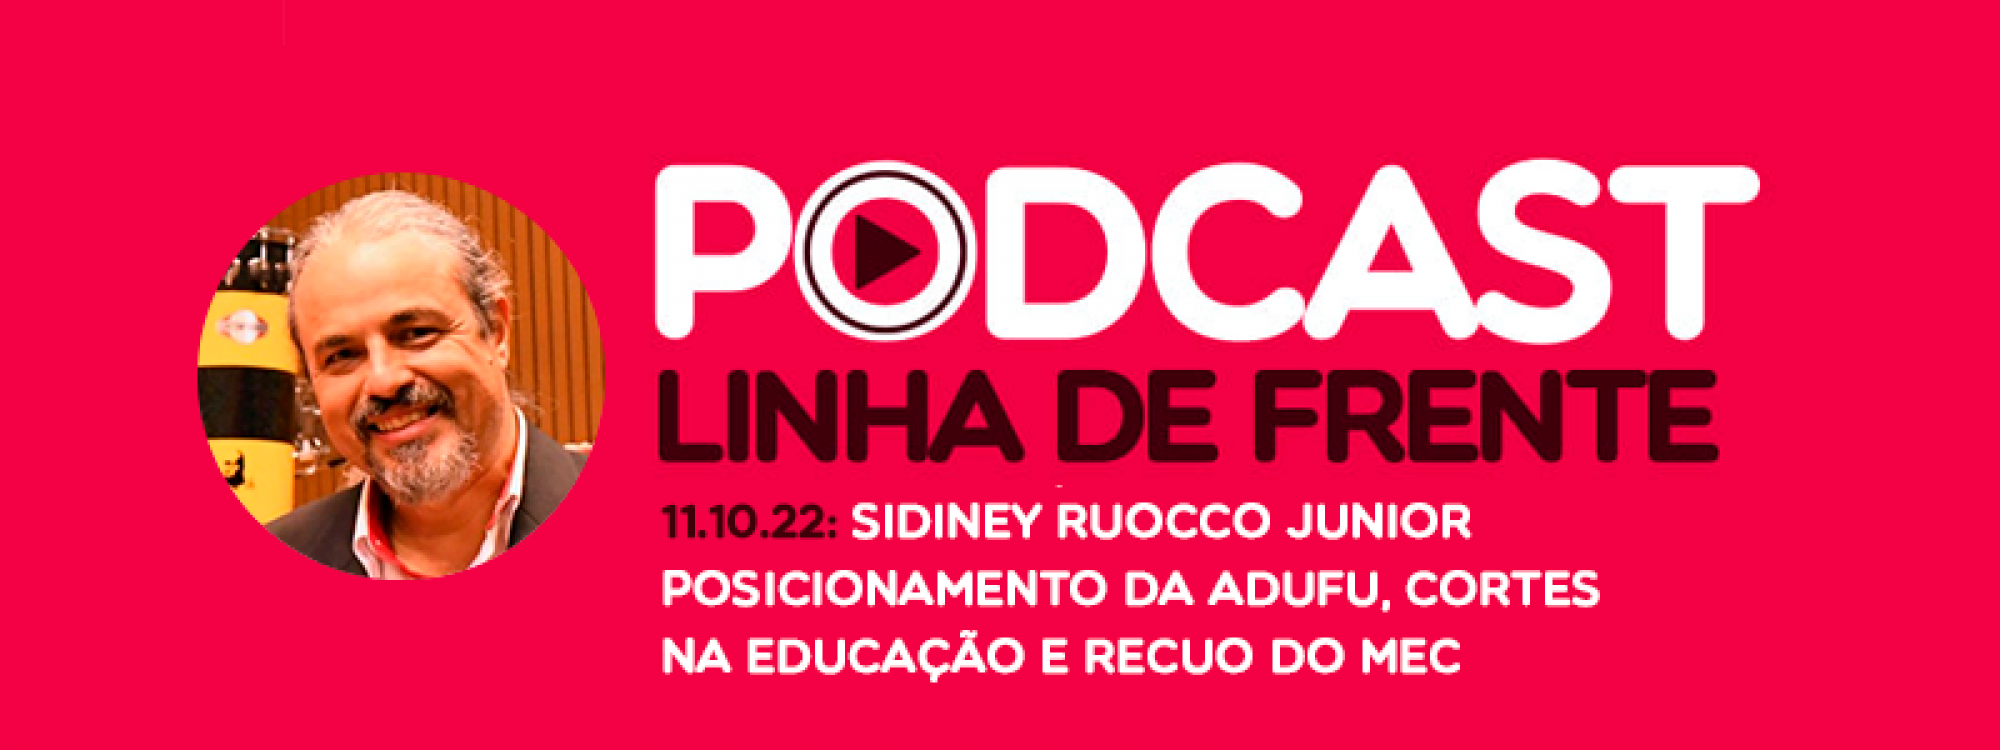 Ouça: Podcast Linha de Frente com Sidiney Ruocco - 11.10: Posicionamento da ADUFU, cortes na educação e recuo do MEC